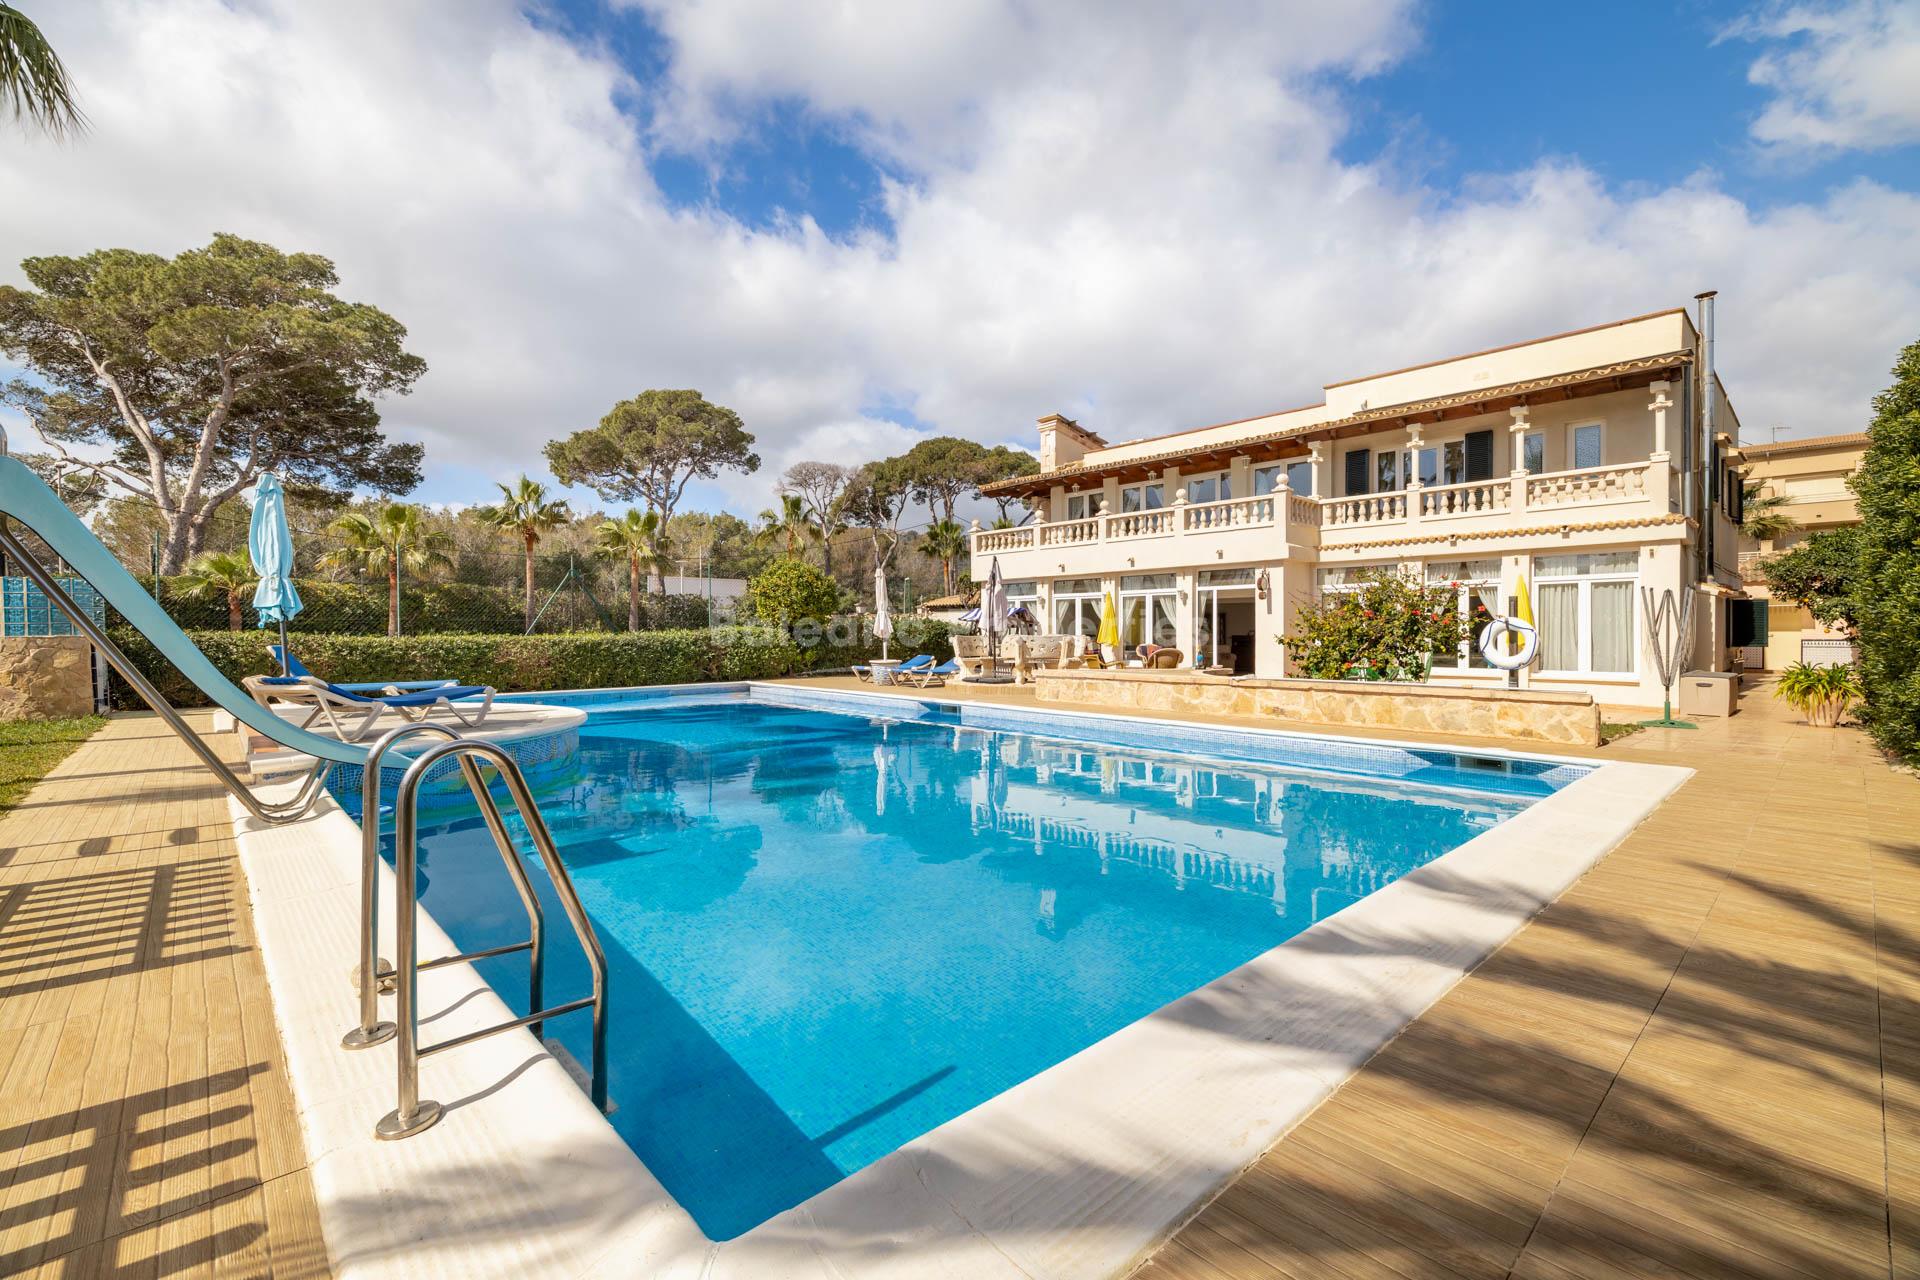 Hermosa villa con pista de tenis en venta cerca de la playa en Cala Millor, Mallorca